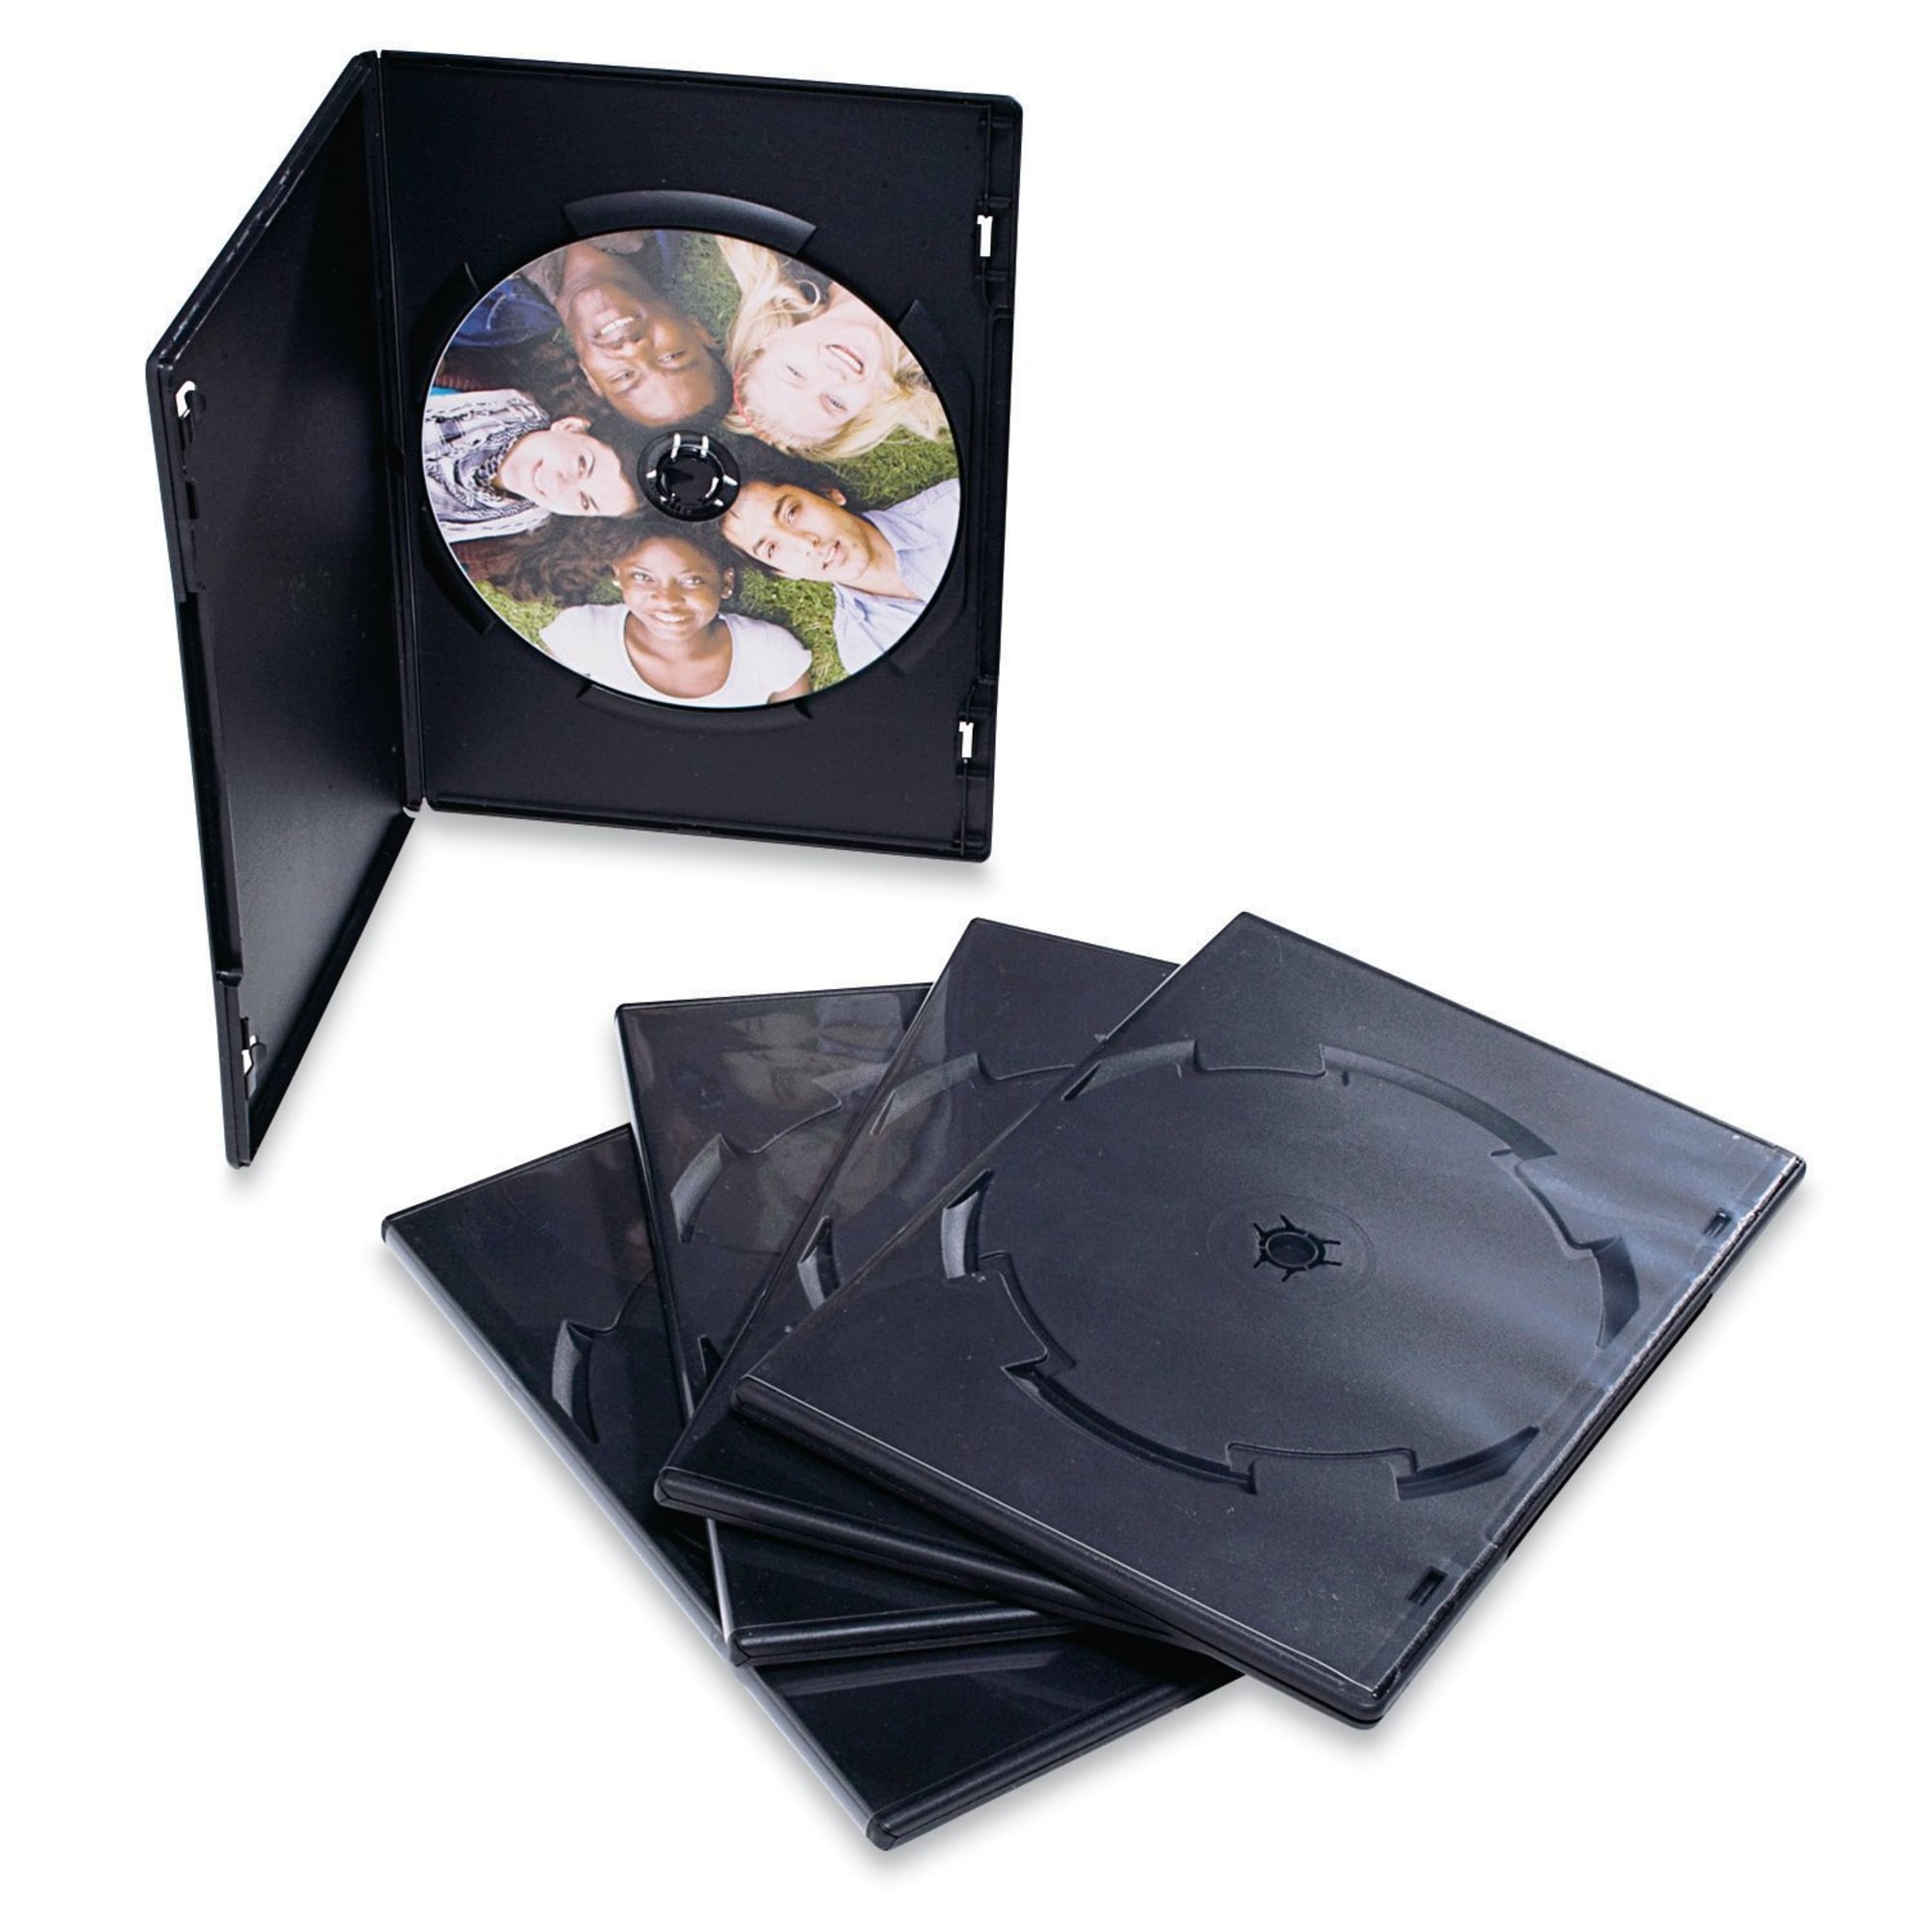 Verbatim CD/DVD Video Trimcases, Black, Case Of 100 - image 2 of 2